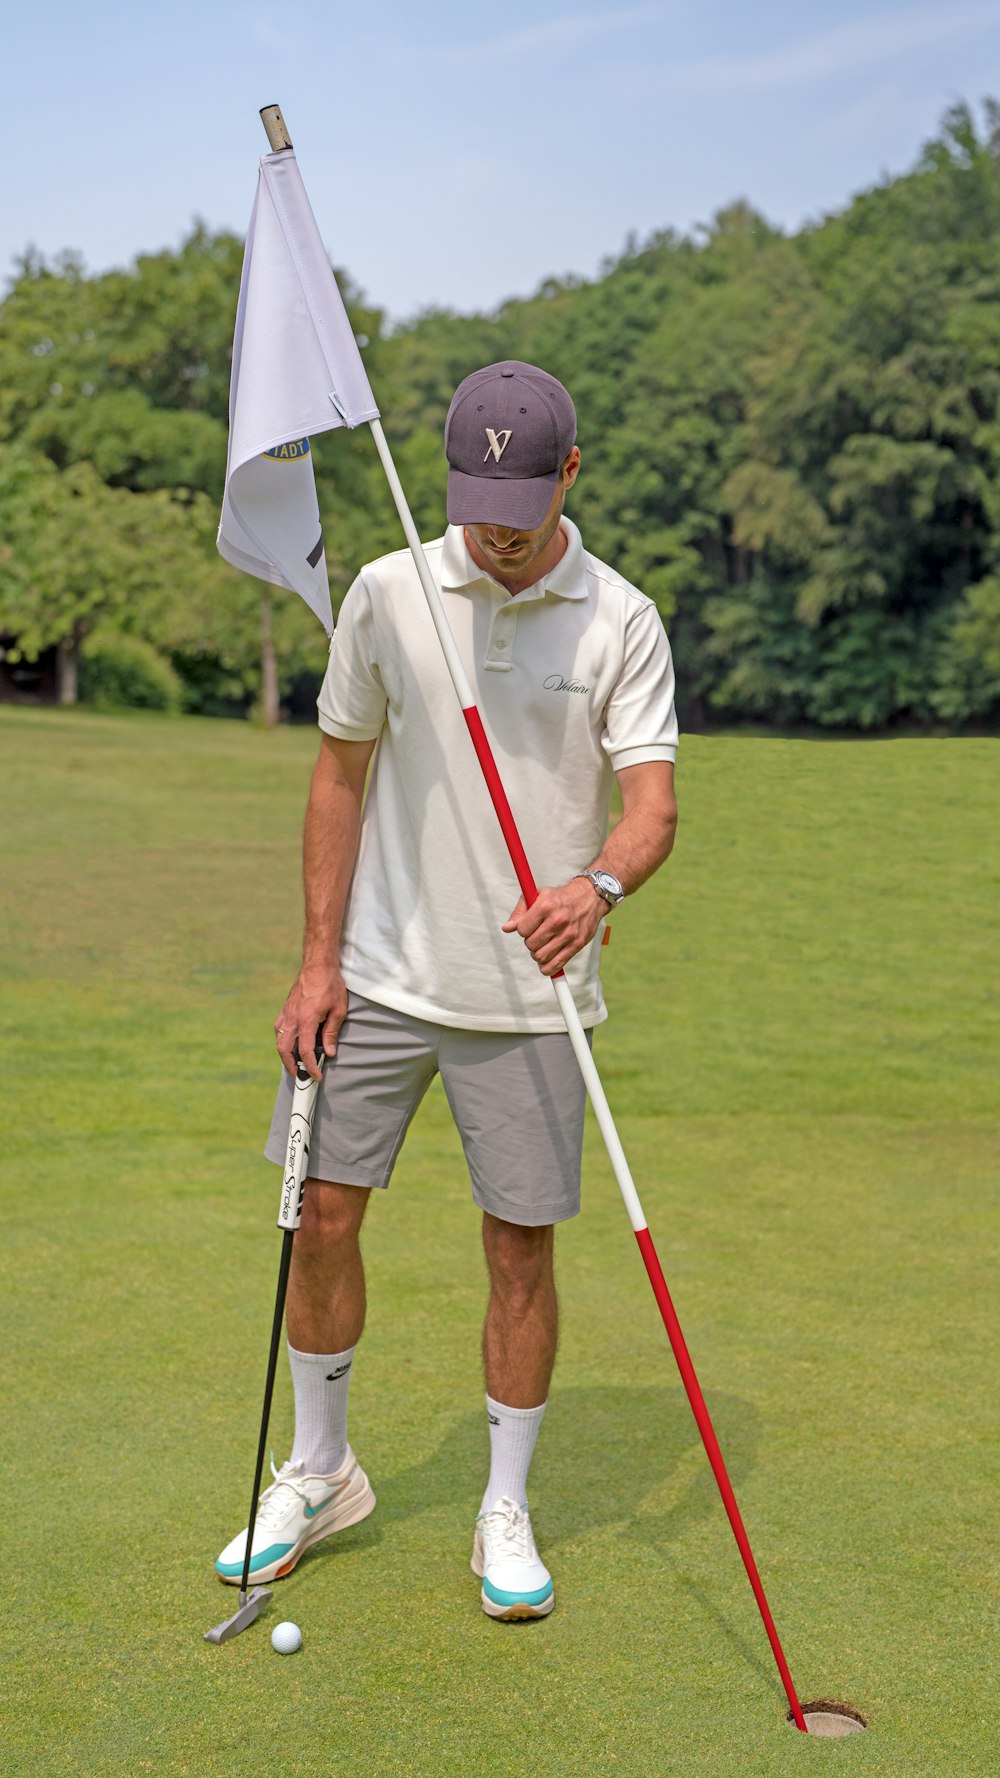 Un uomo che tiene una mazza da golf e una bandiera